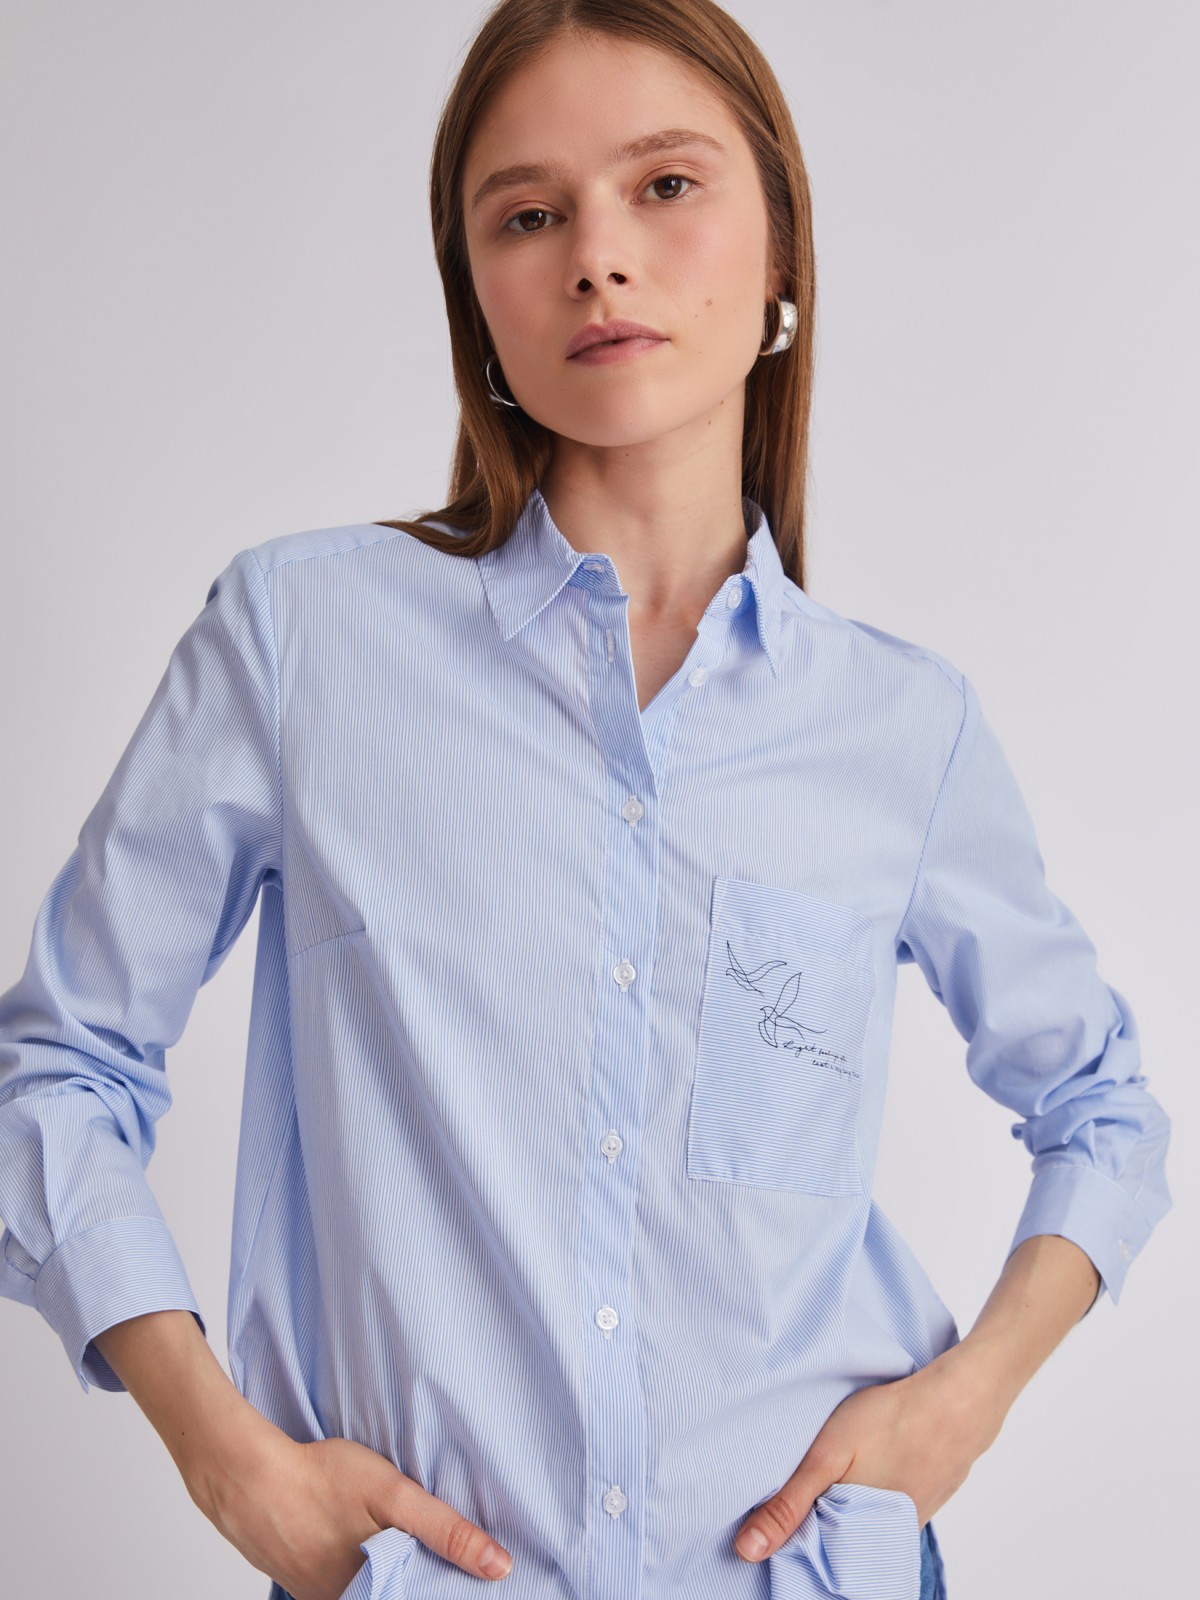 Офисная рубашка прямого силуэта с акцентом на кармане zolla 223311159242, цвет светло-голубой, размер M - фото 4